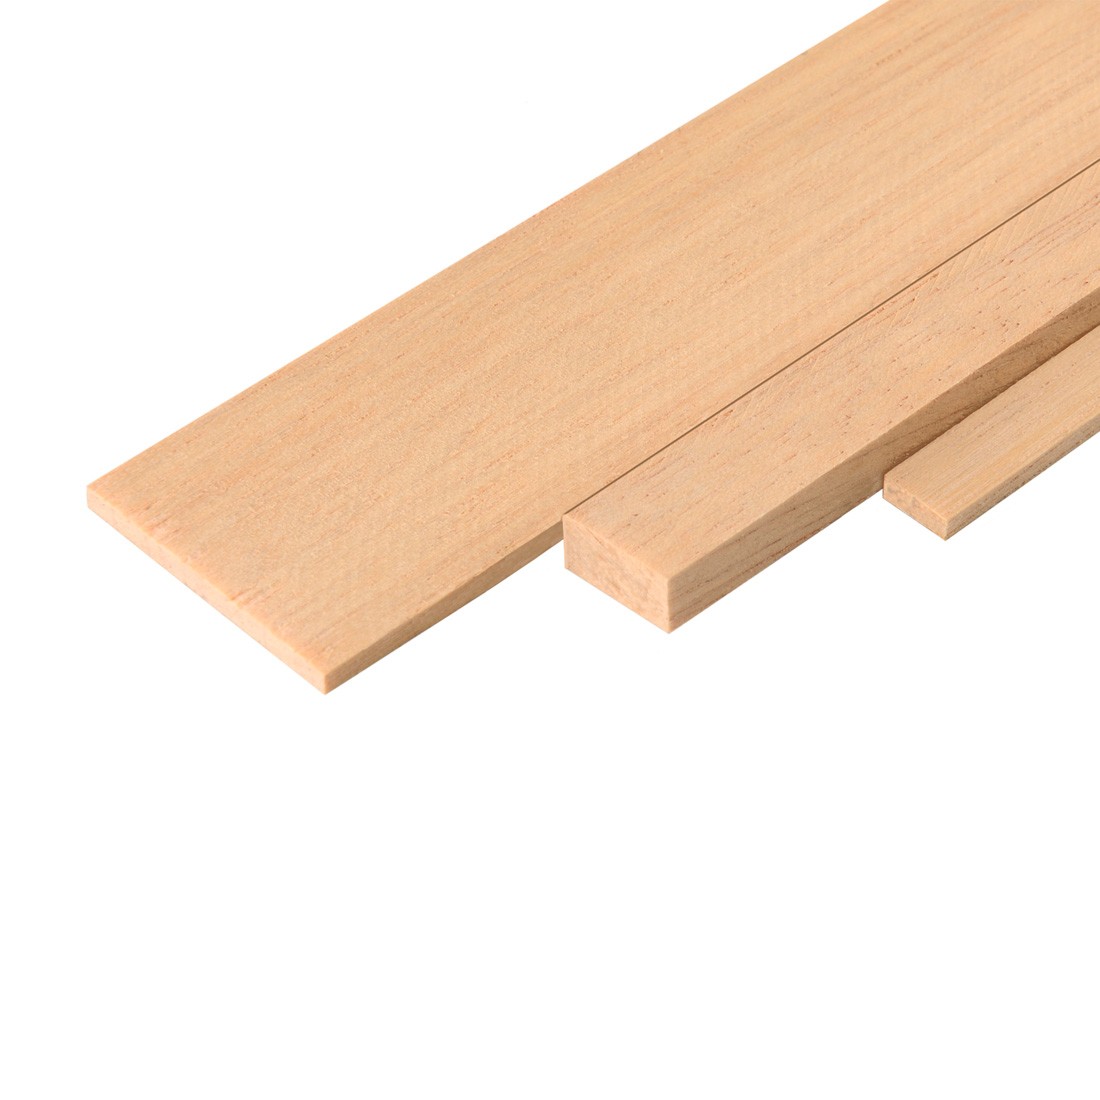 Ramin wood strip mm.5x10